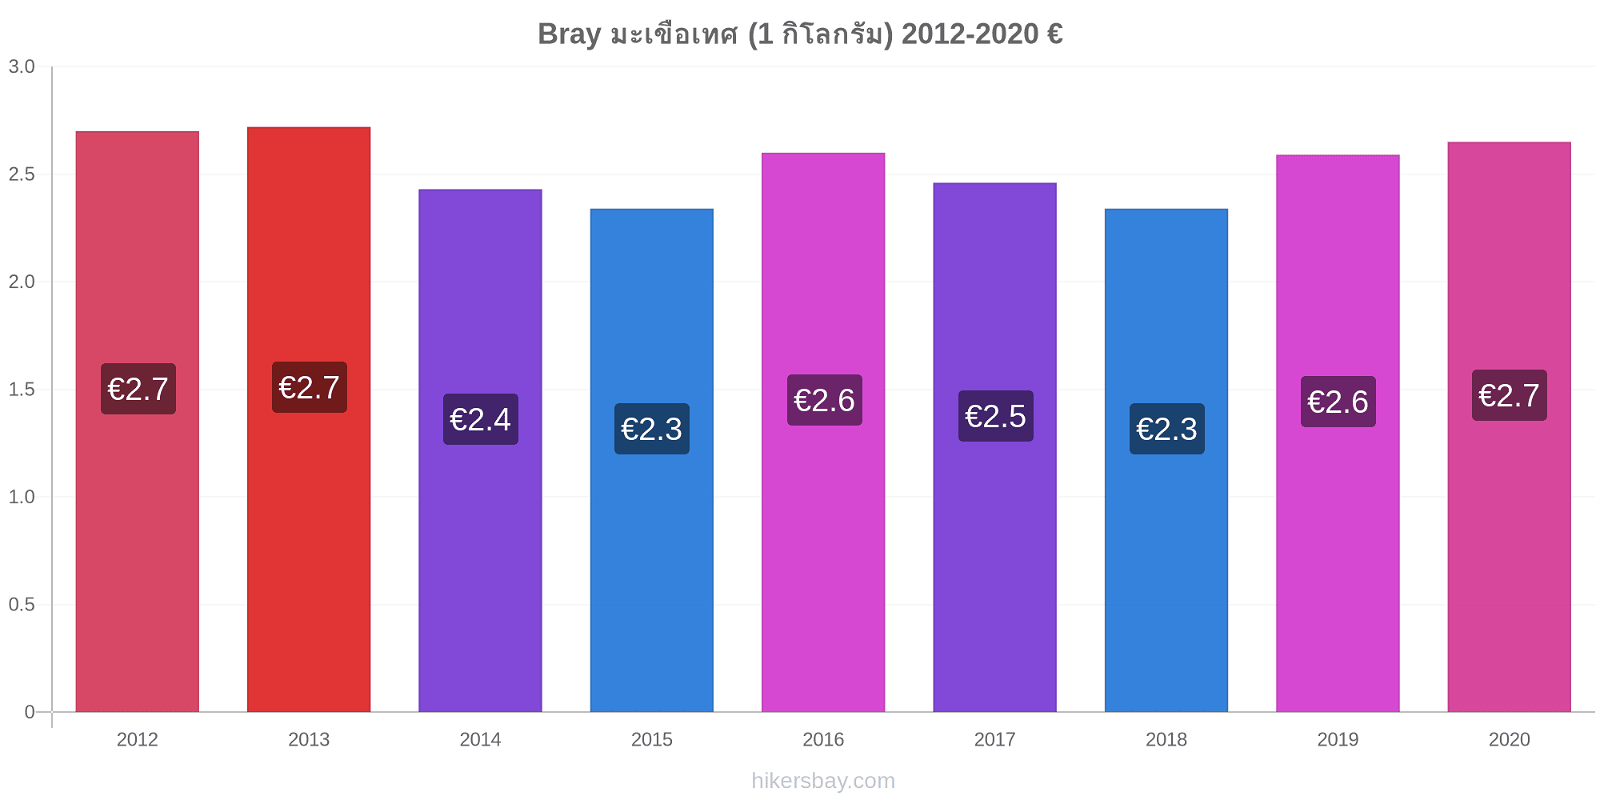 Bray การเปลี่ยนแปลงราคา มะเขือเทศ (1 กิโลกรัม) hikersbay.com